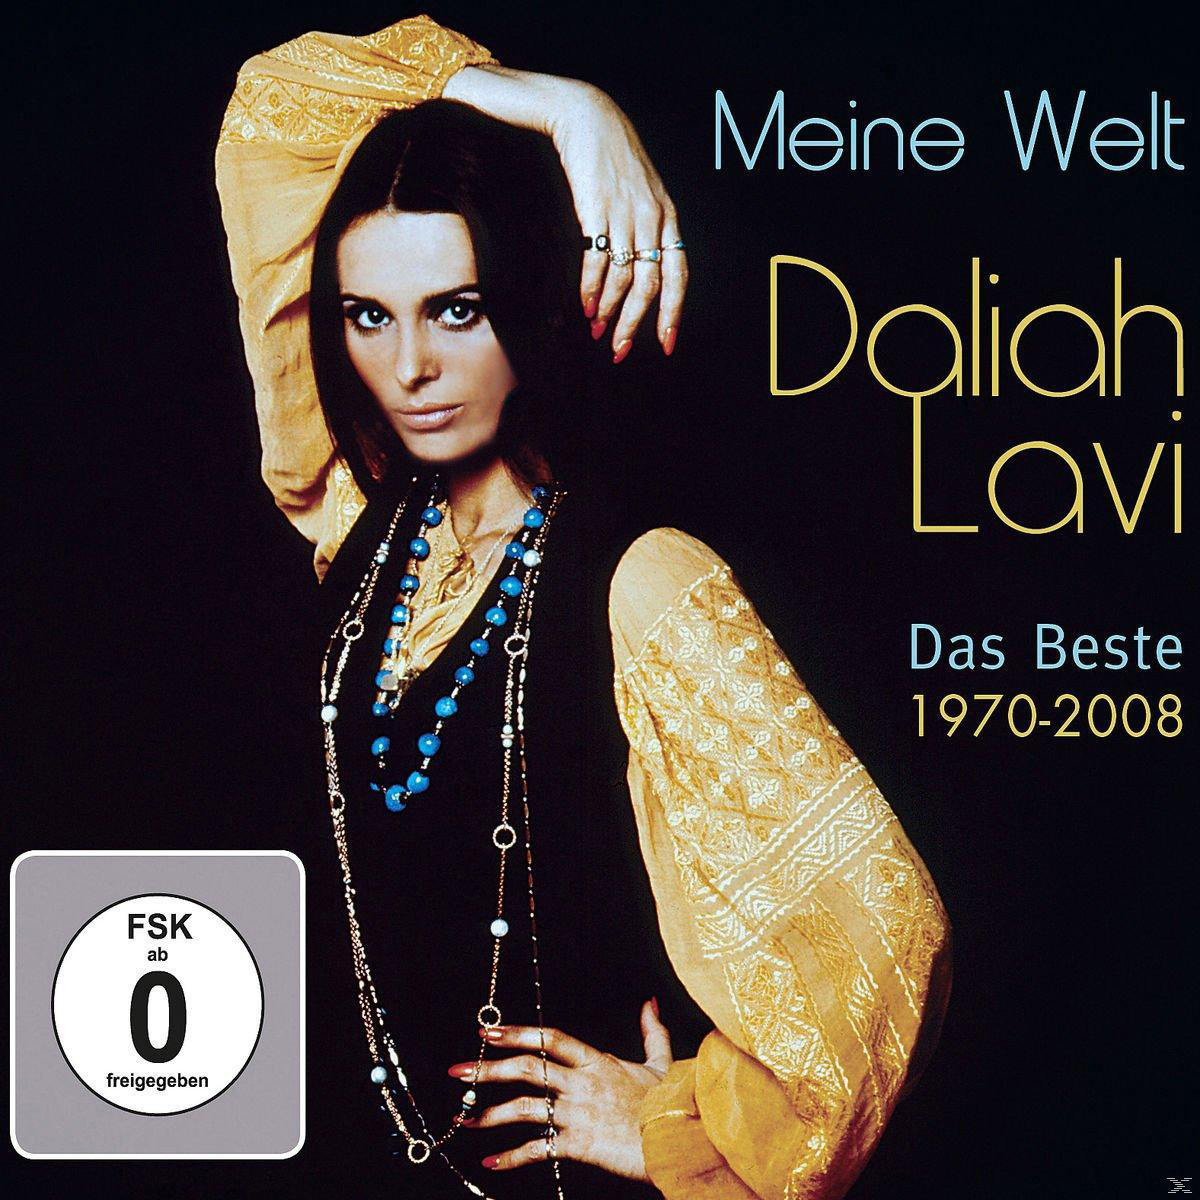 Meine - (CD Das Video) + - DVD Beste Lavi - Daliah Welt